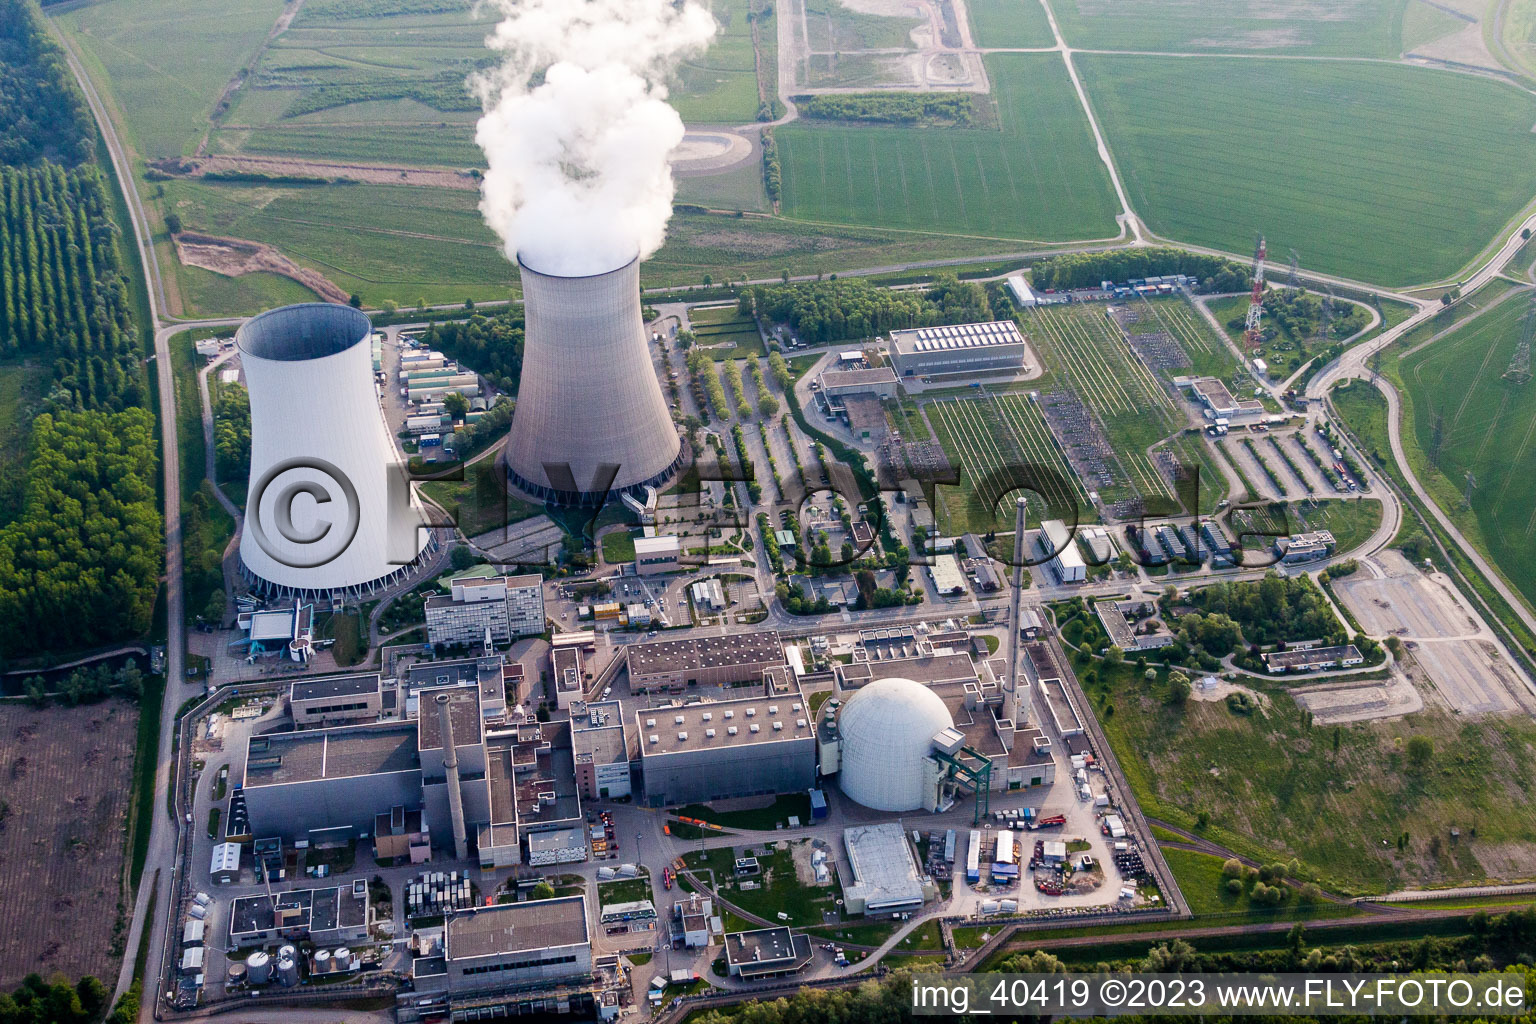 Vue oblique de Colonne de vapeur au-dessus de la tour de refroidissement de la centrale nucléaire d'EnBW Kernkraft GmbH sur le Rheinschanzinsel sur le Rhin à Philippsburg dans le département Bade-Wurtemberg, Allemagne